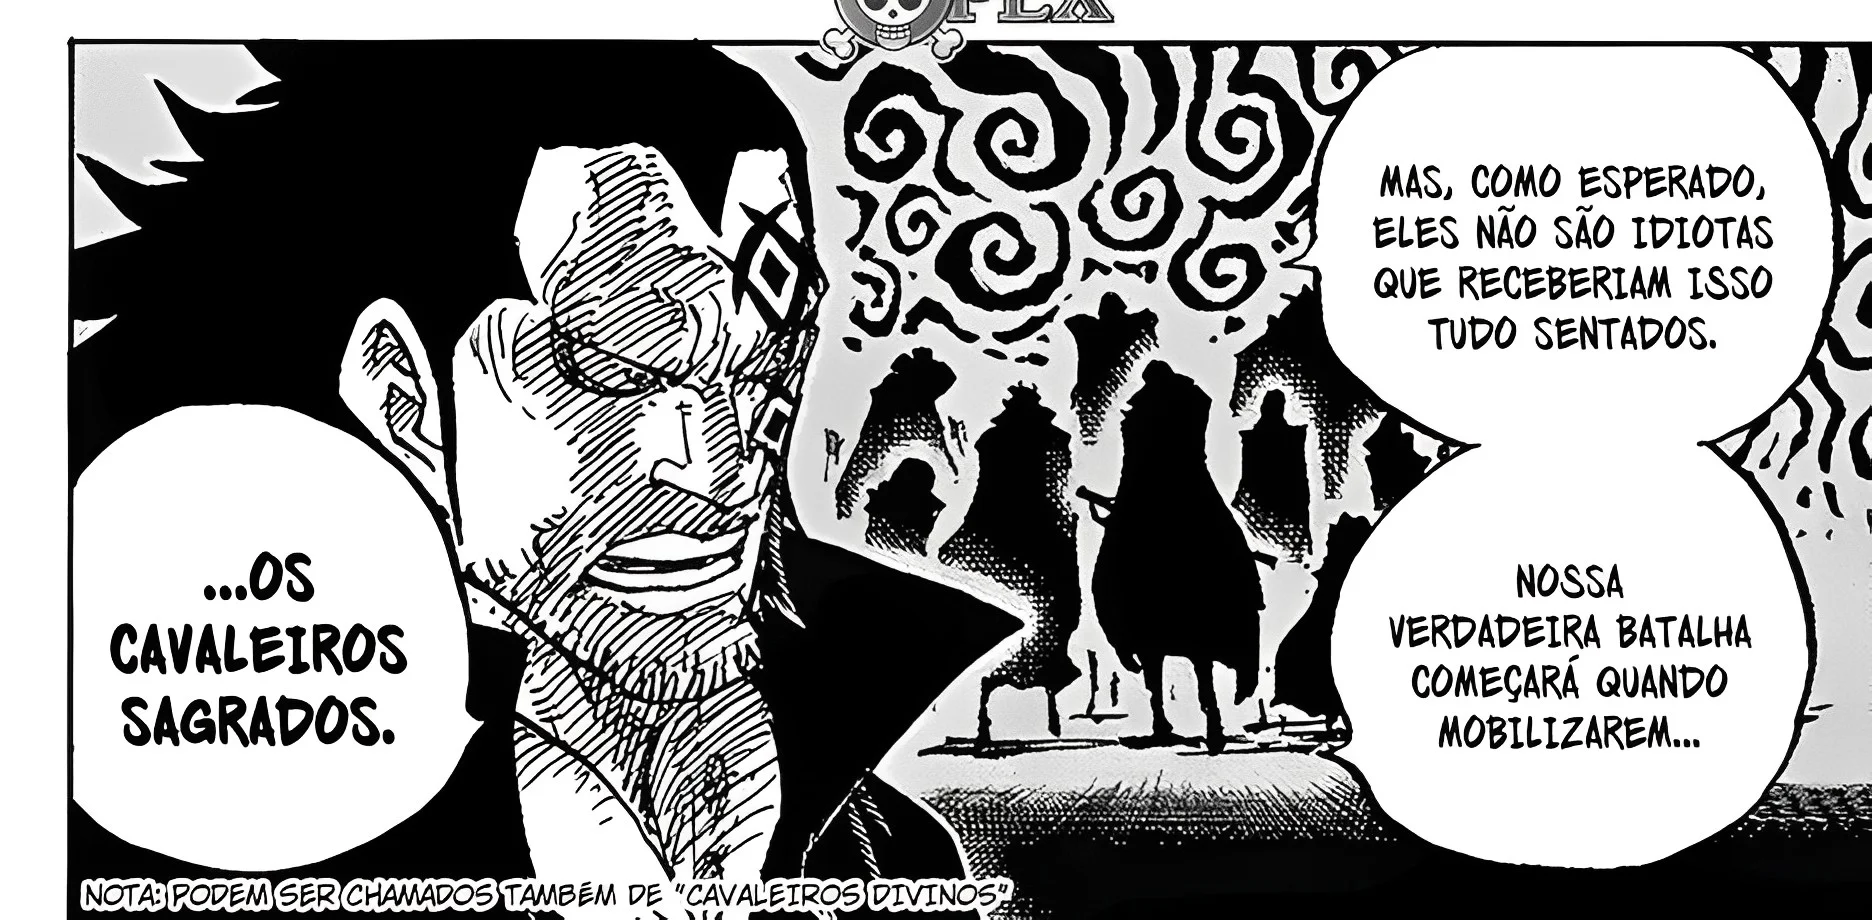 One Piece: Capítulo 1083 revela vilões mais poderosos que os Almirantes